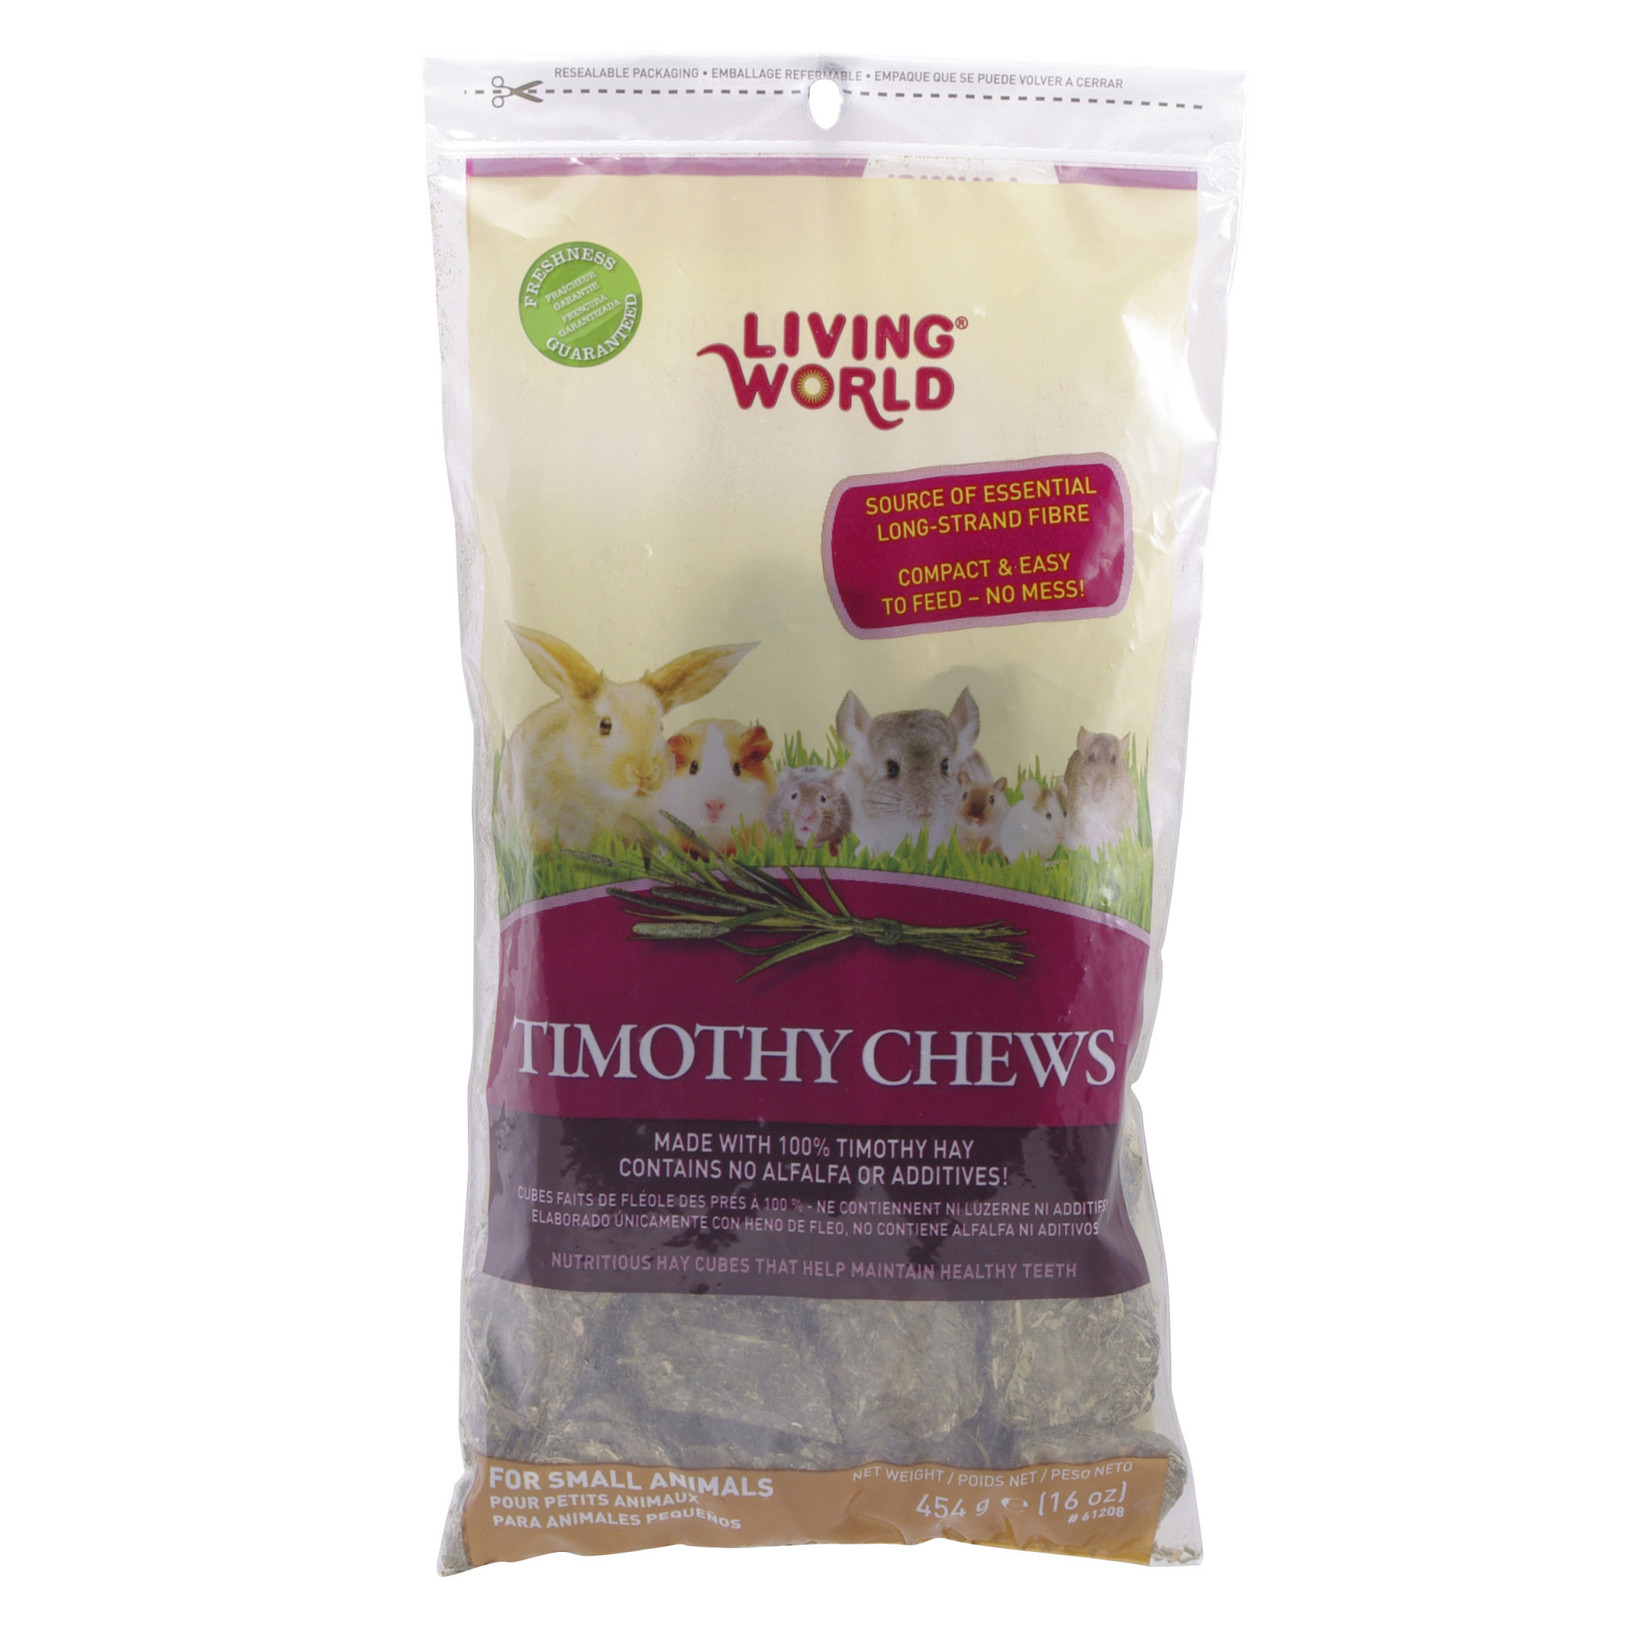 LIVING WORLD Living World Timothy Chews - 454 g (16 oz)